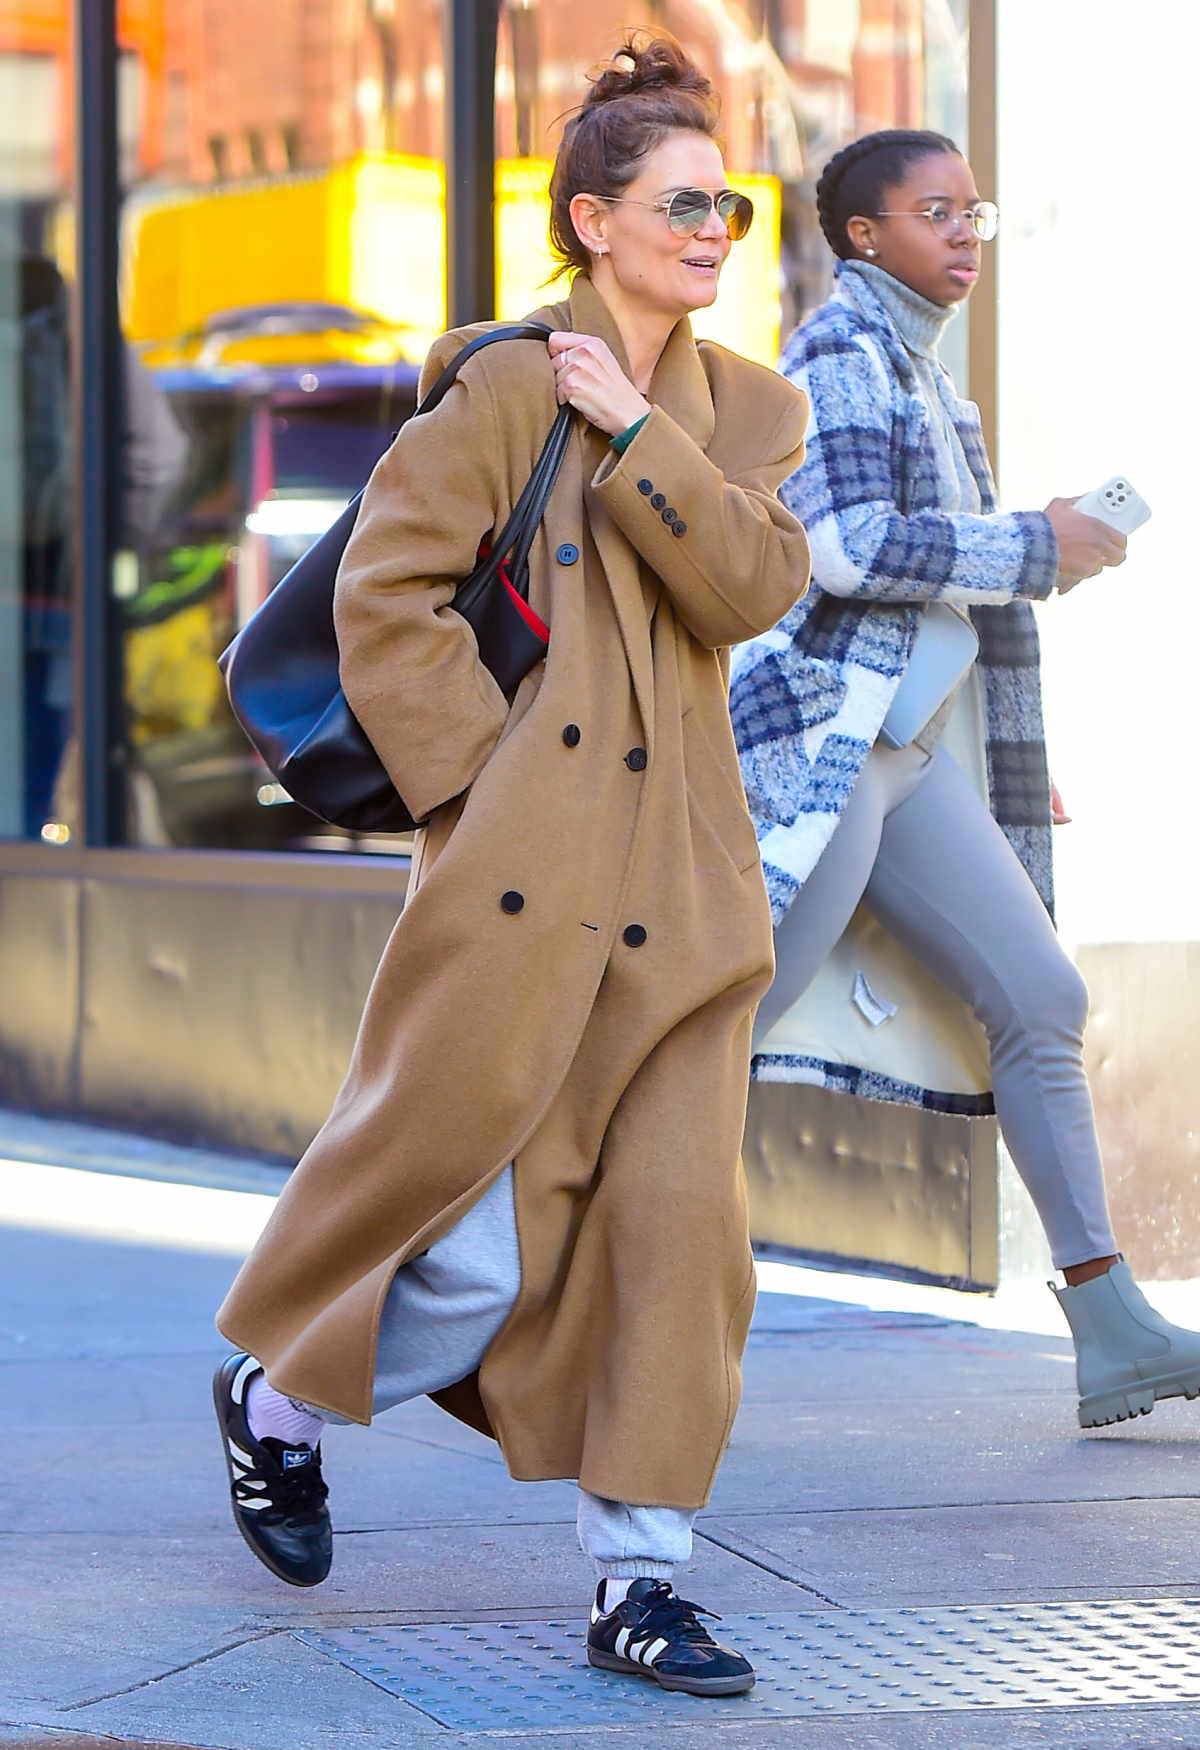 Katie Holmes zimą nosi adidasy Samba. Katie Holmes nawet zimą nie rozstaje się z kultowymi adidasami Samba. Popularny model butów nosi do ciepłego płaszcza i szalika w kratę.